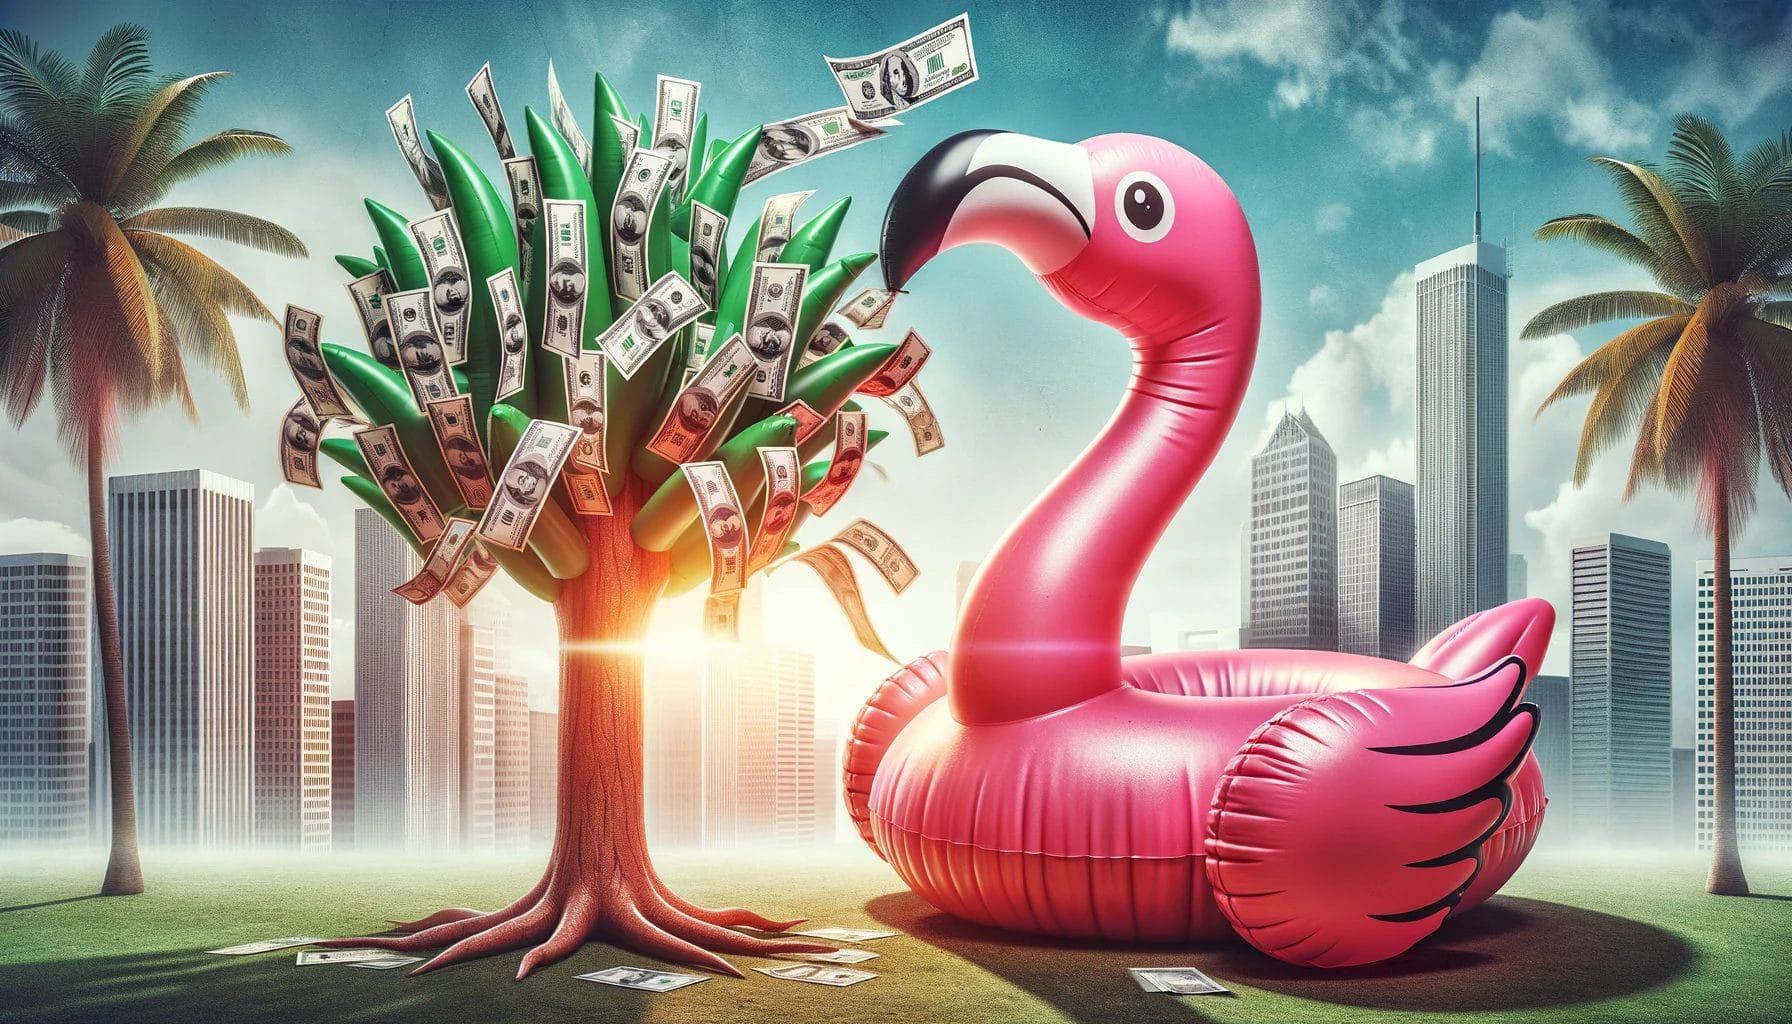 Fotorealistische Szene mit einem aufblasbaren pinken Flamingo, der mit dem Schnabel Banknoten an einen Geldbaum hängt. Im Hintergrund ein sonniger Tag mit Wolkenkratzern, die Finanzinstitutionen repräsentieren. Die Atmosphäre ist lebendig und motivierend, was das Konzept der Rendite und des finanziellen Wachstums symbolisiert.